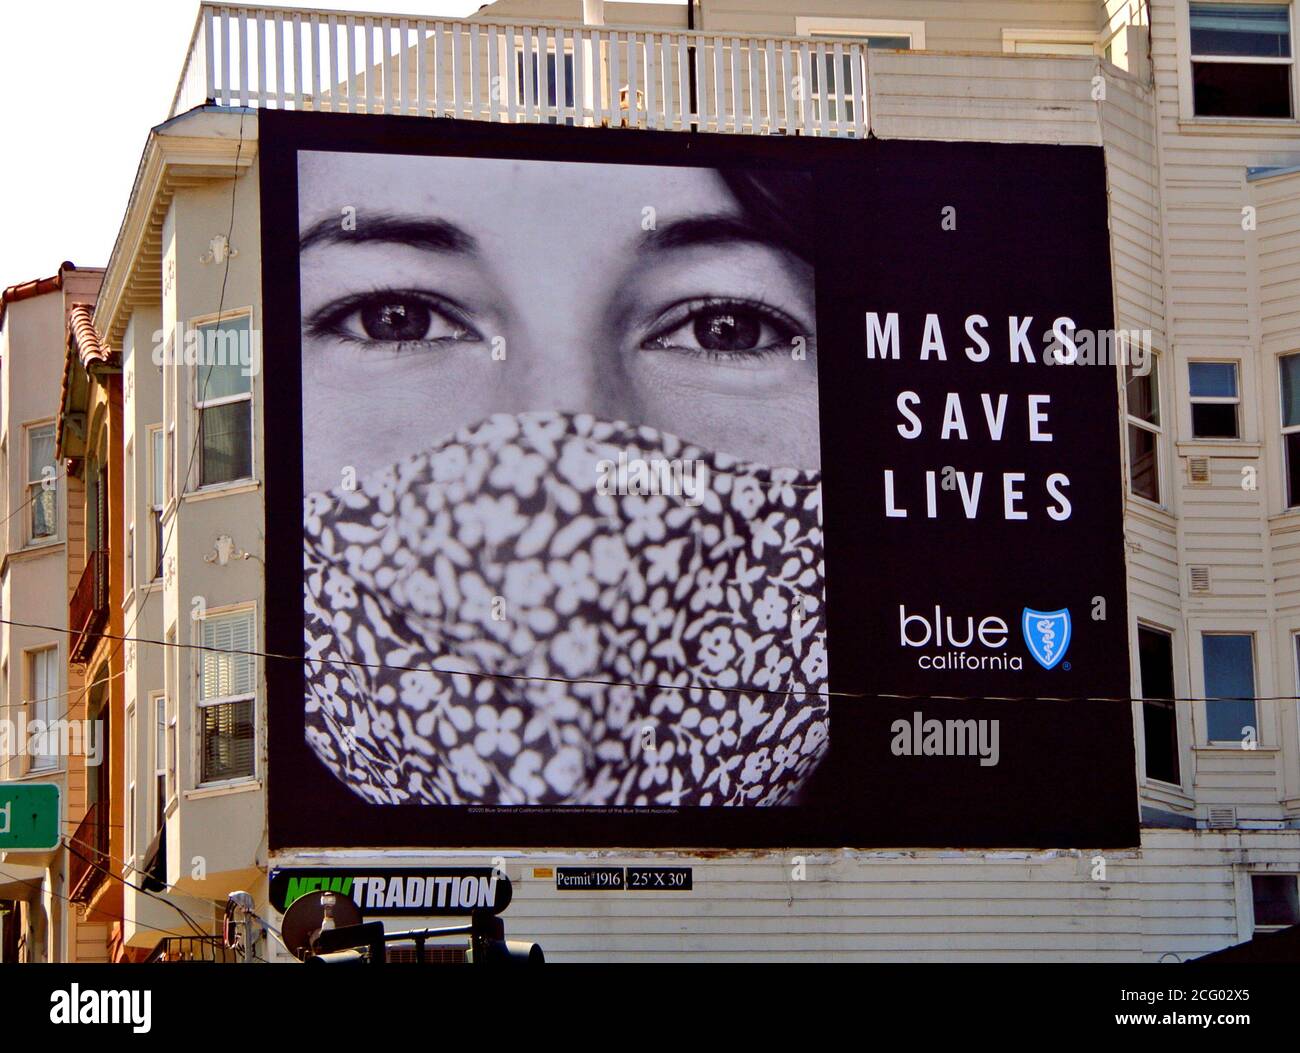 Blaues Schild Oversicherung Zeichen auf san francisco kalifornien usa Nachbarschaft Haus Förderung Tragen von Masken mit Nachrichten-Masken retten Leben Stockfoto